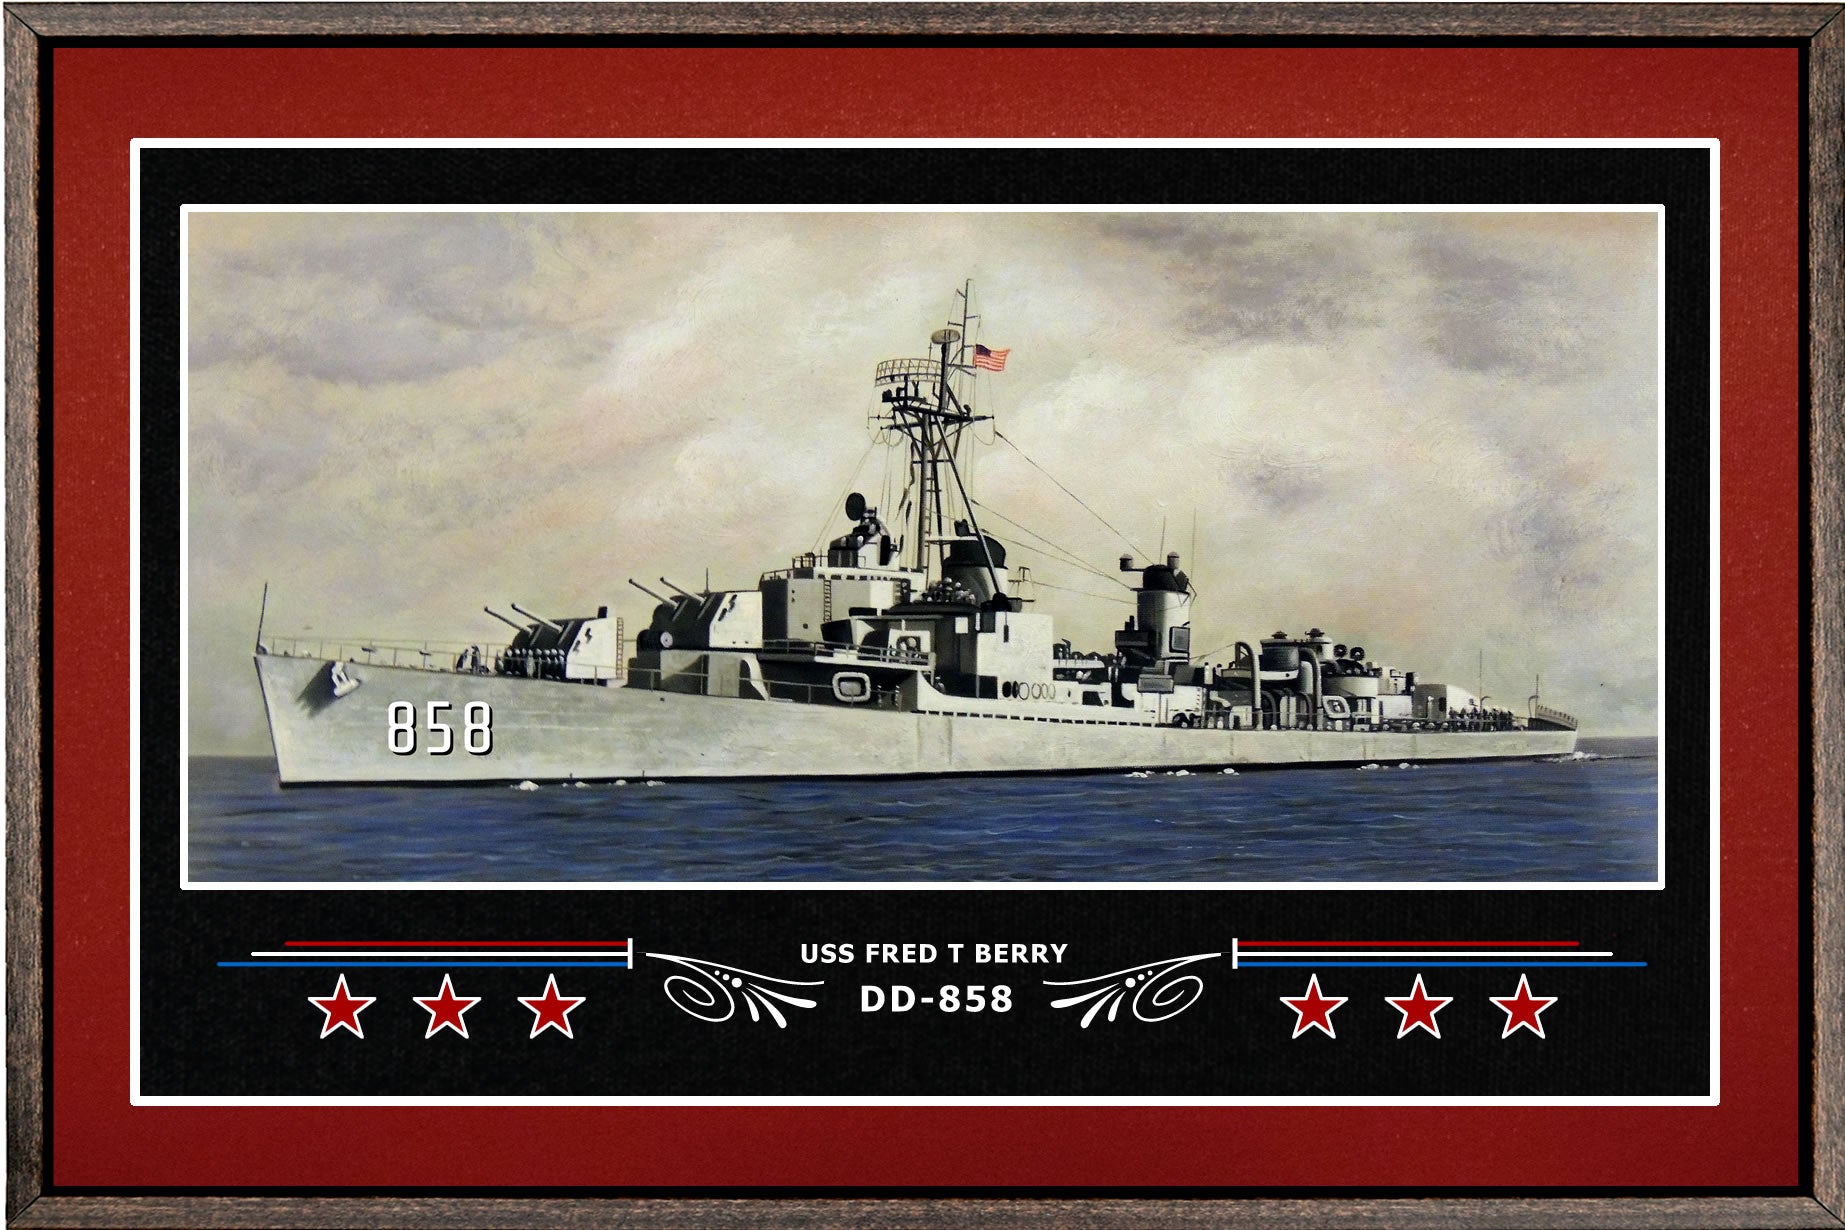 USS FRED T BERRY DD 858 BOX FRAMED CANVAS ART BURGUNDY